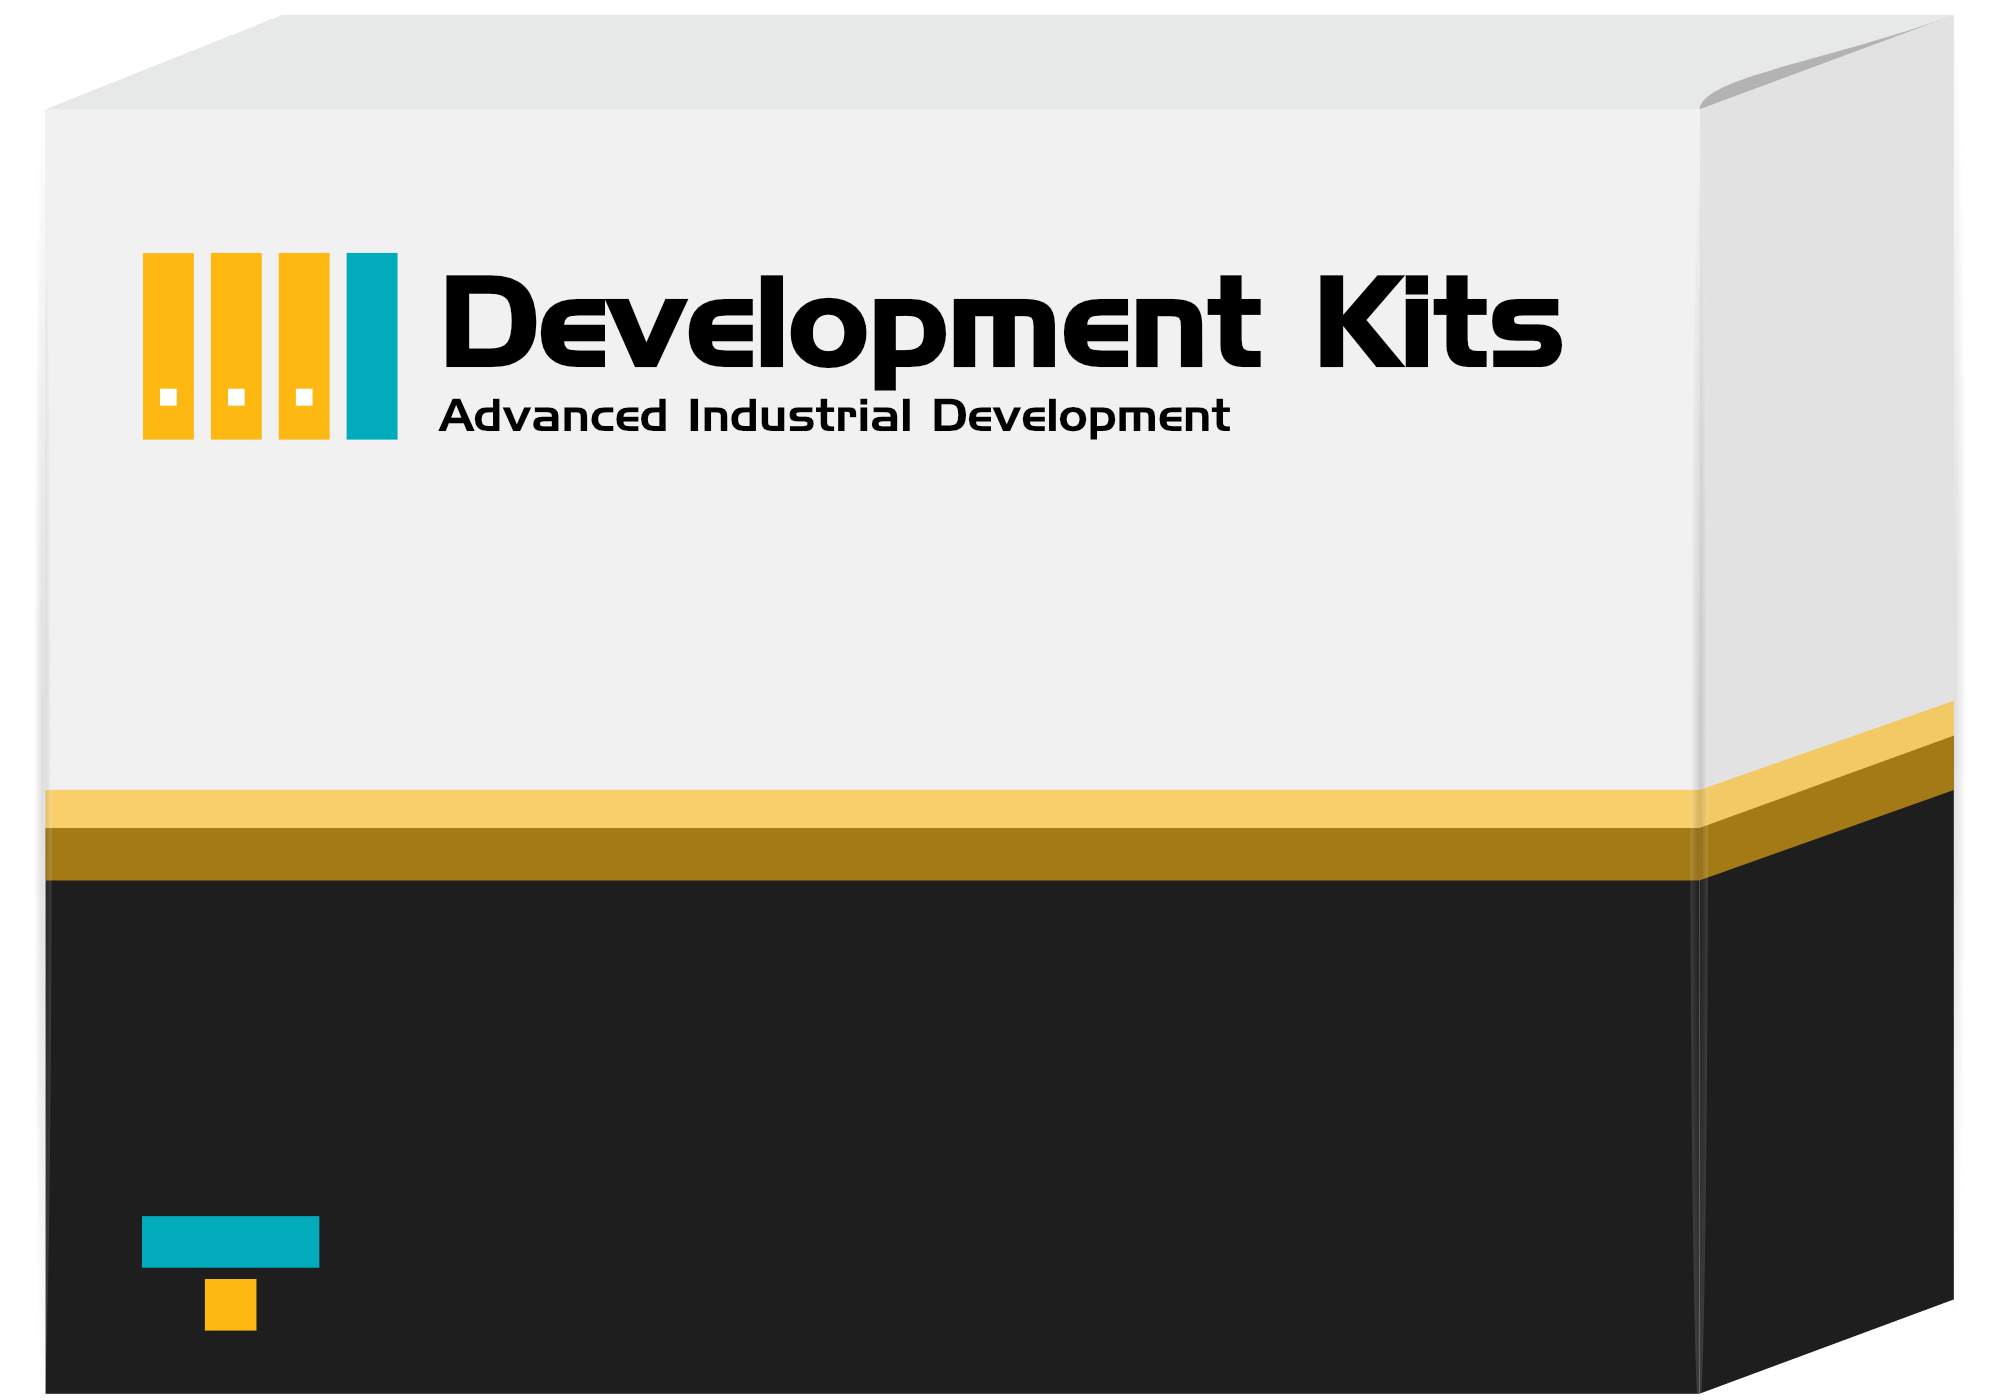 Development Kits